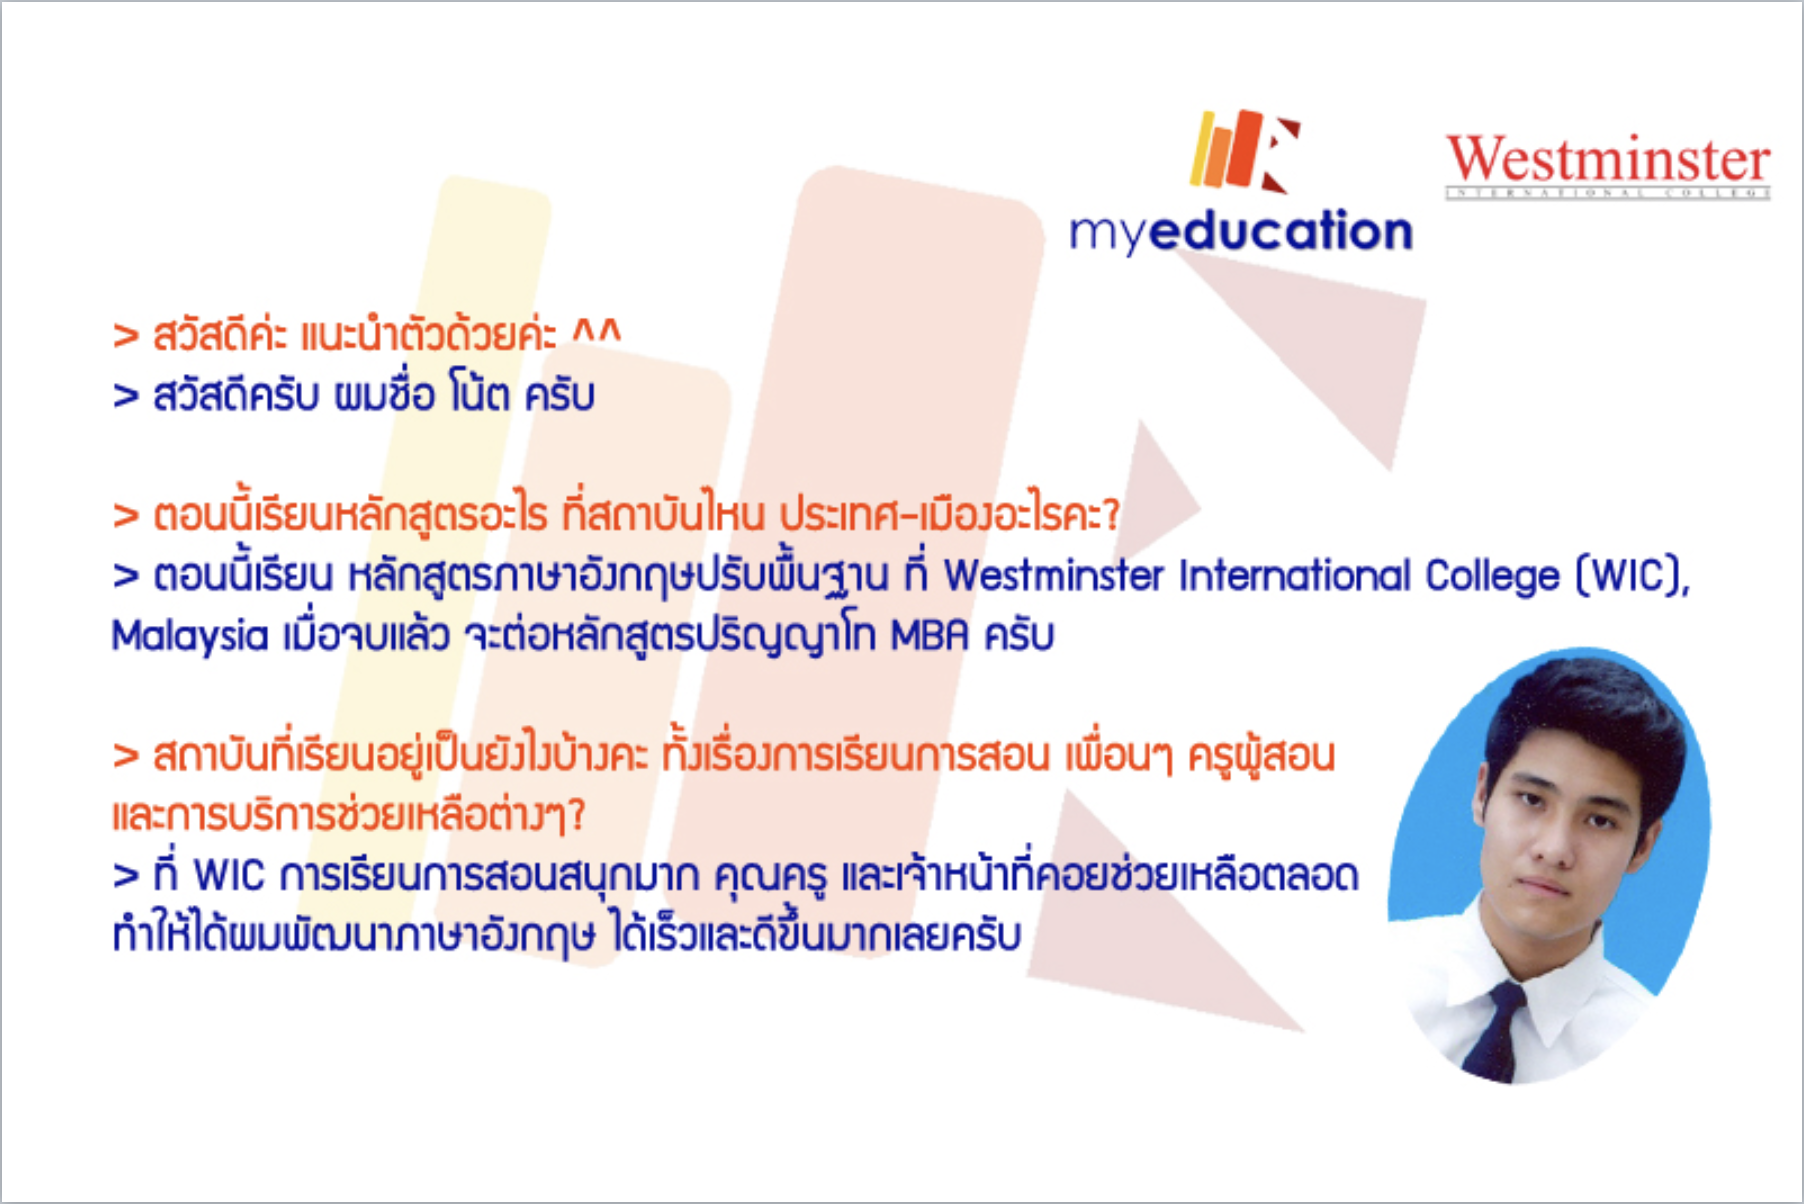 รีวิวน้องโน๊ต ไปเรียนปริญญาโทที่ Westminster International College (WIC), Malaysia